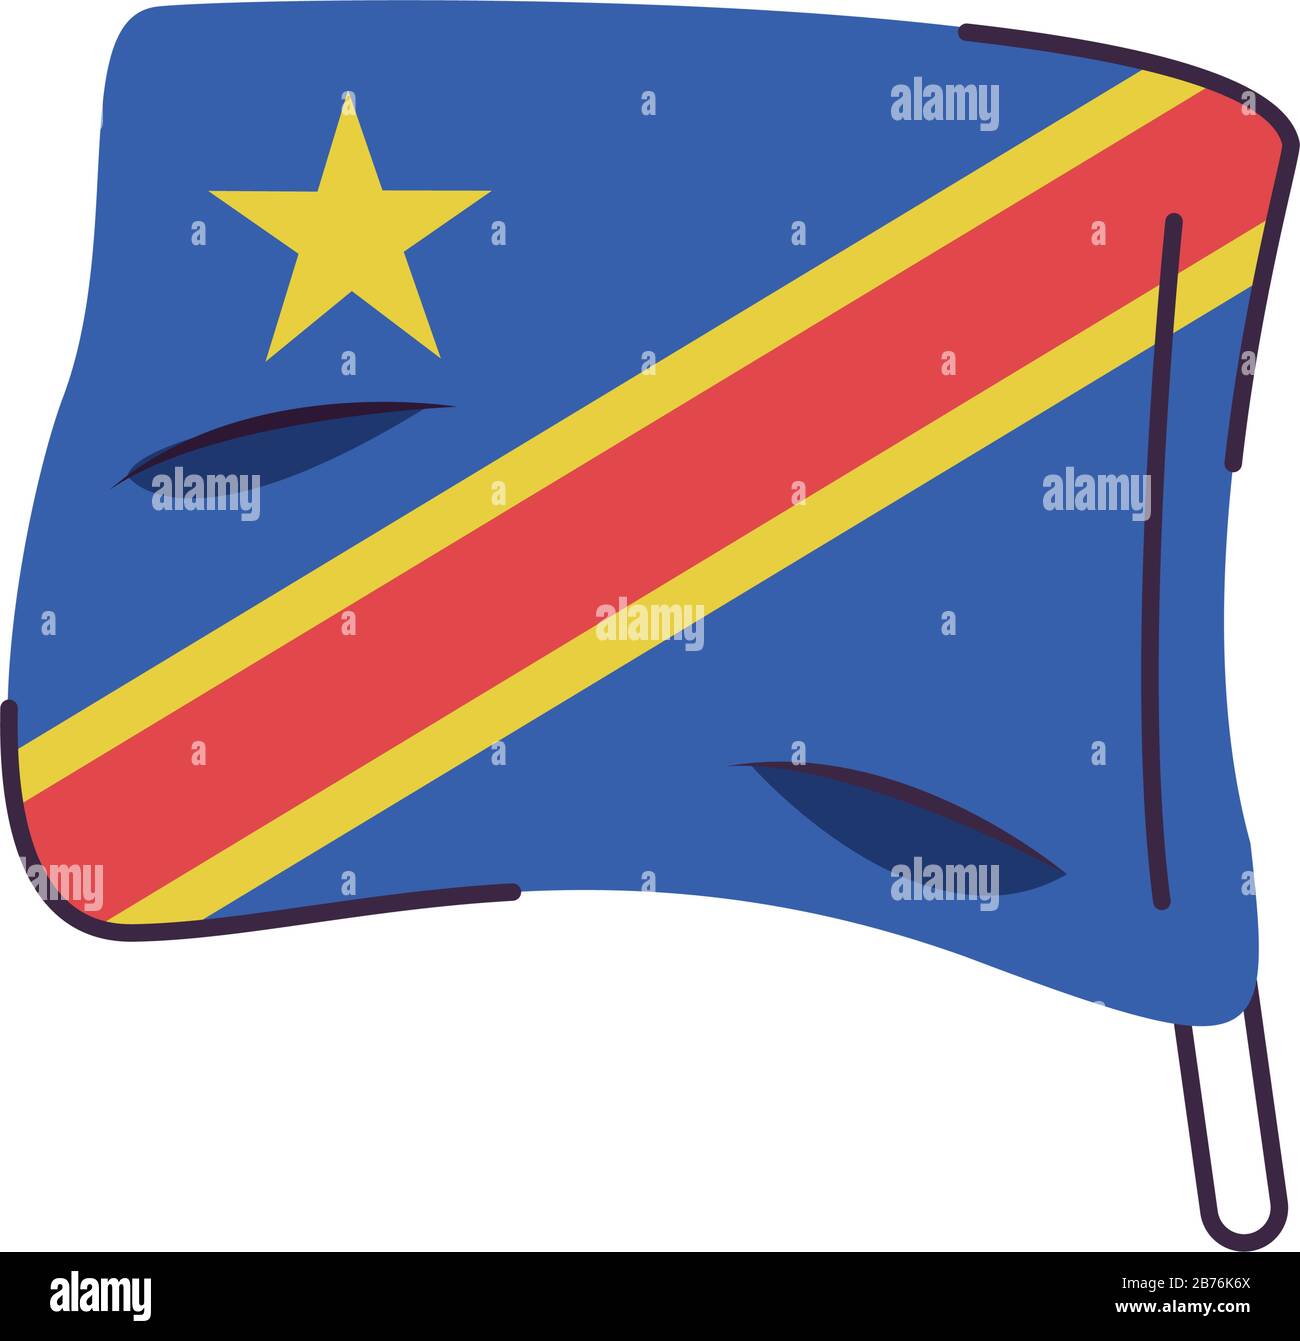 Congo dr Banque d'images vectorielles - Alamy